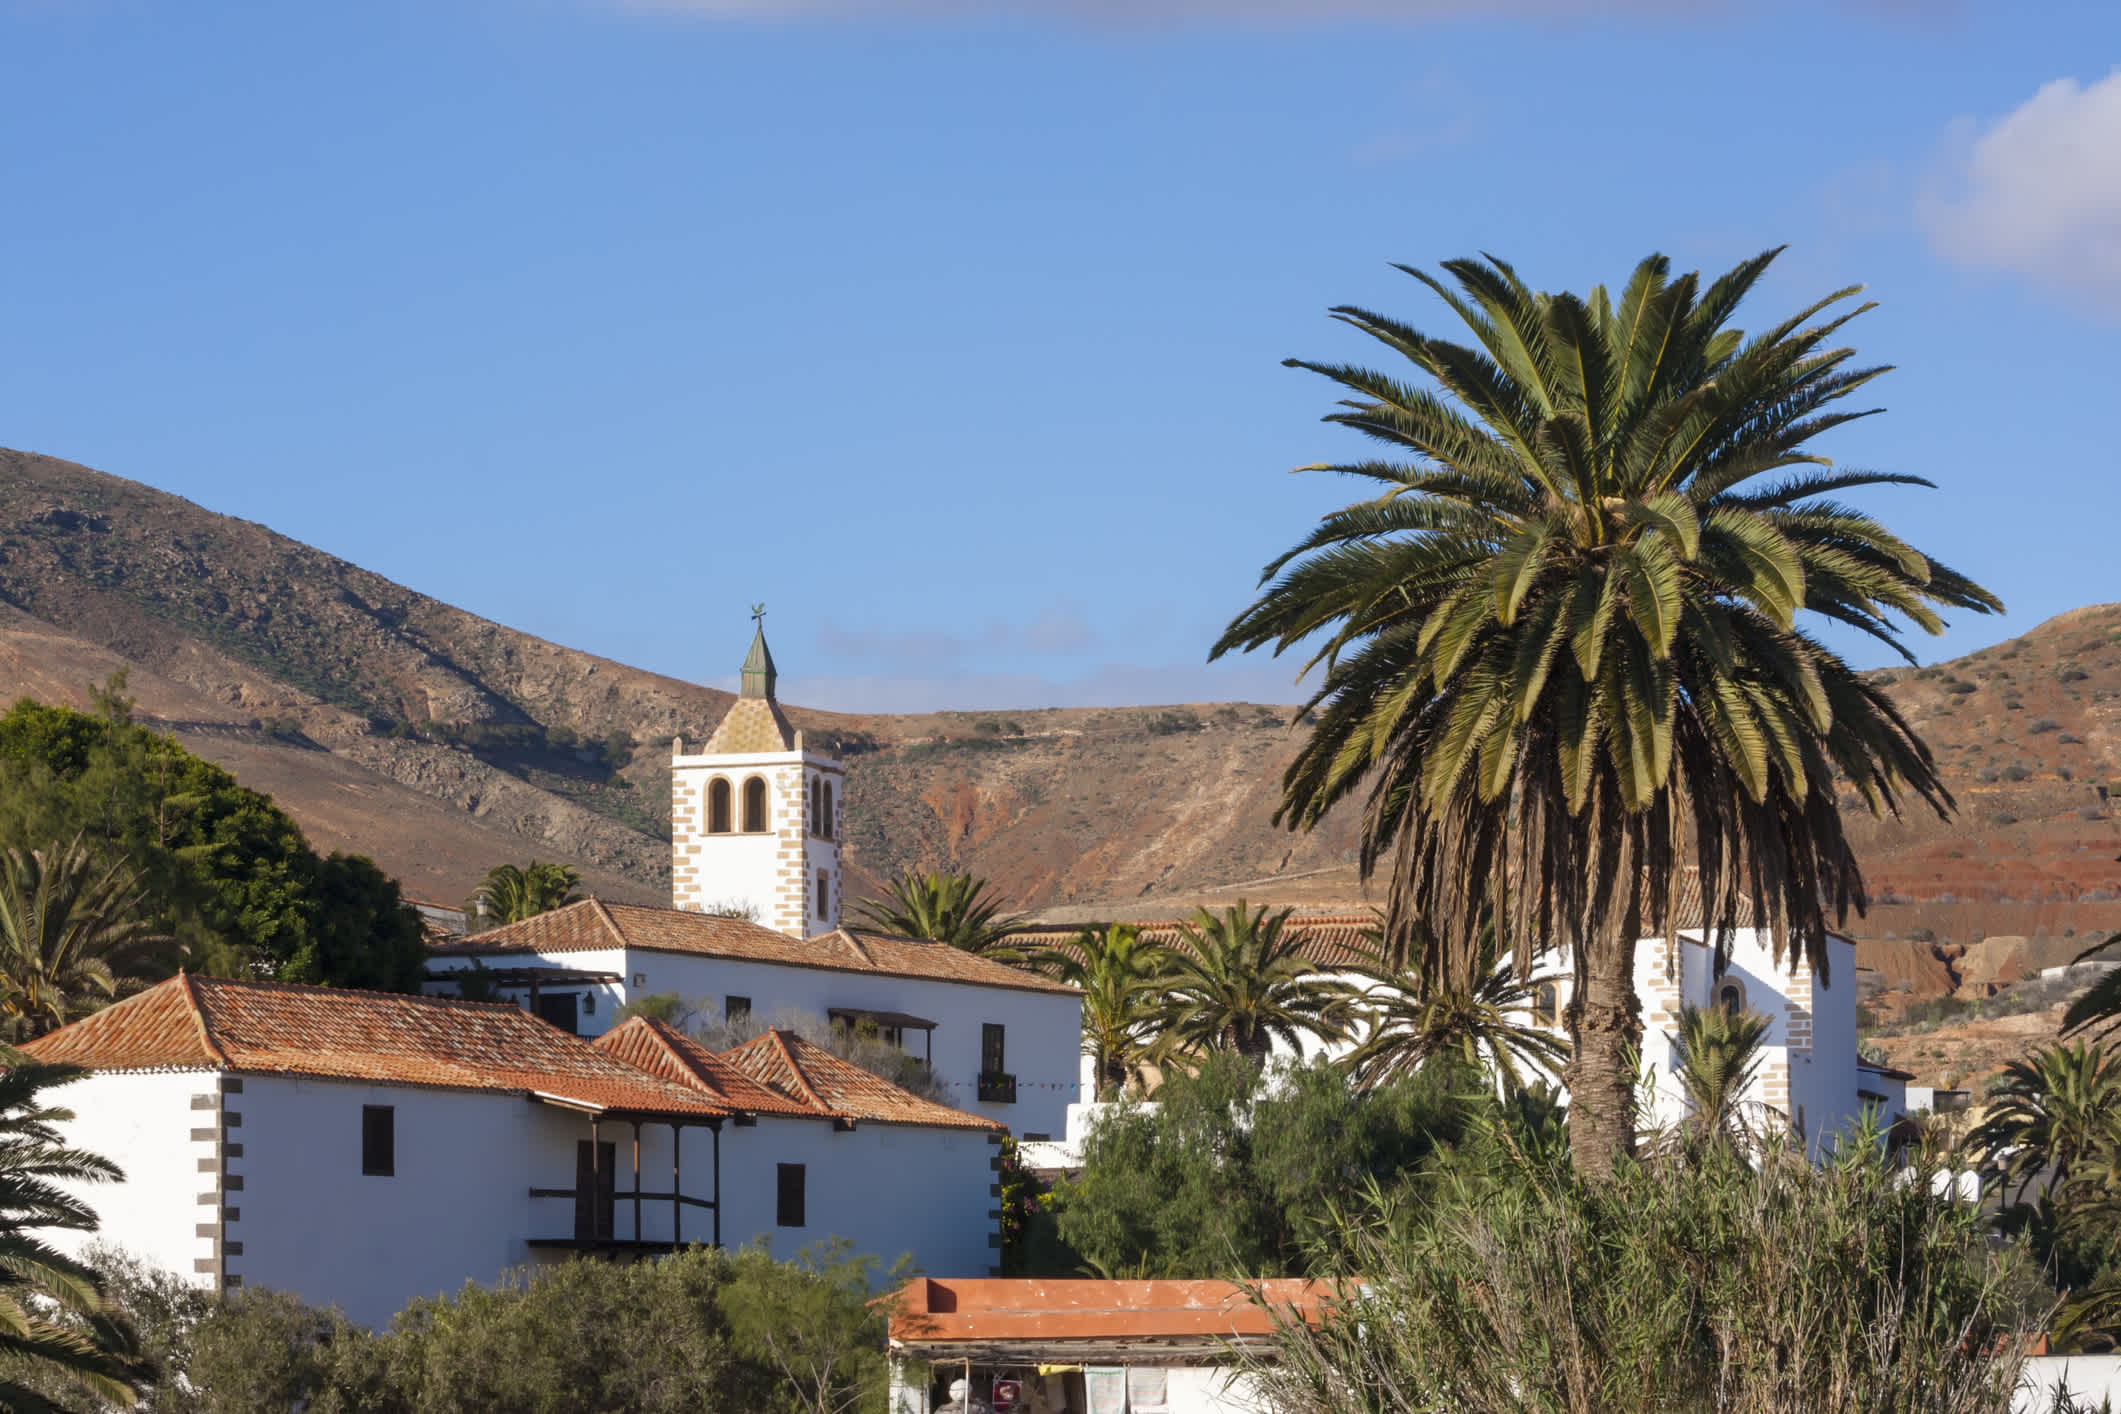 Blick zum Betancuria-Dorf auf Fuerteventura, Kanarische Inseln, Spanien.

